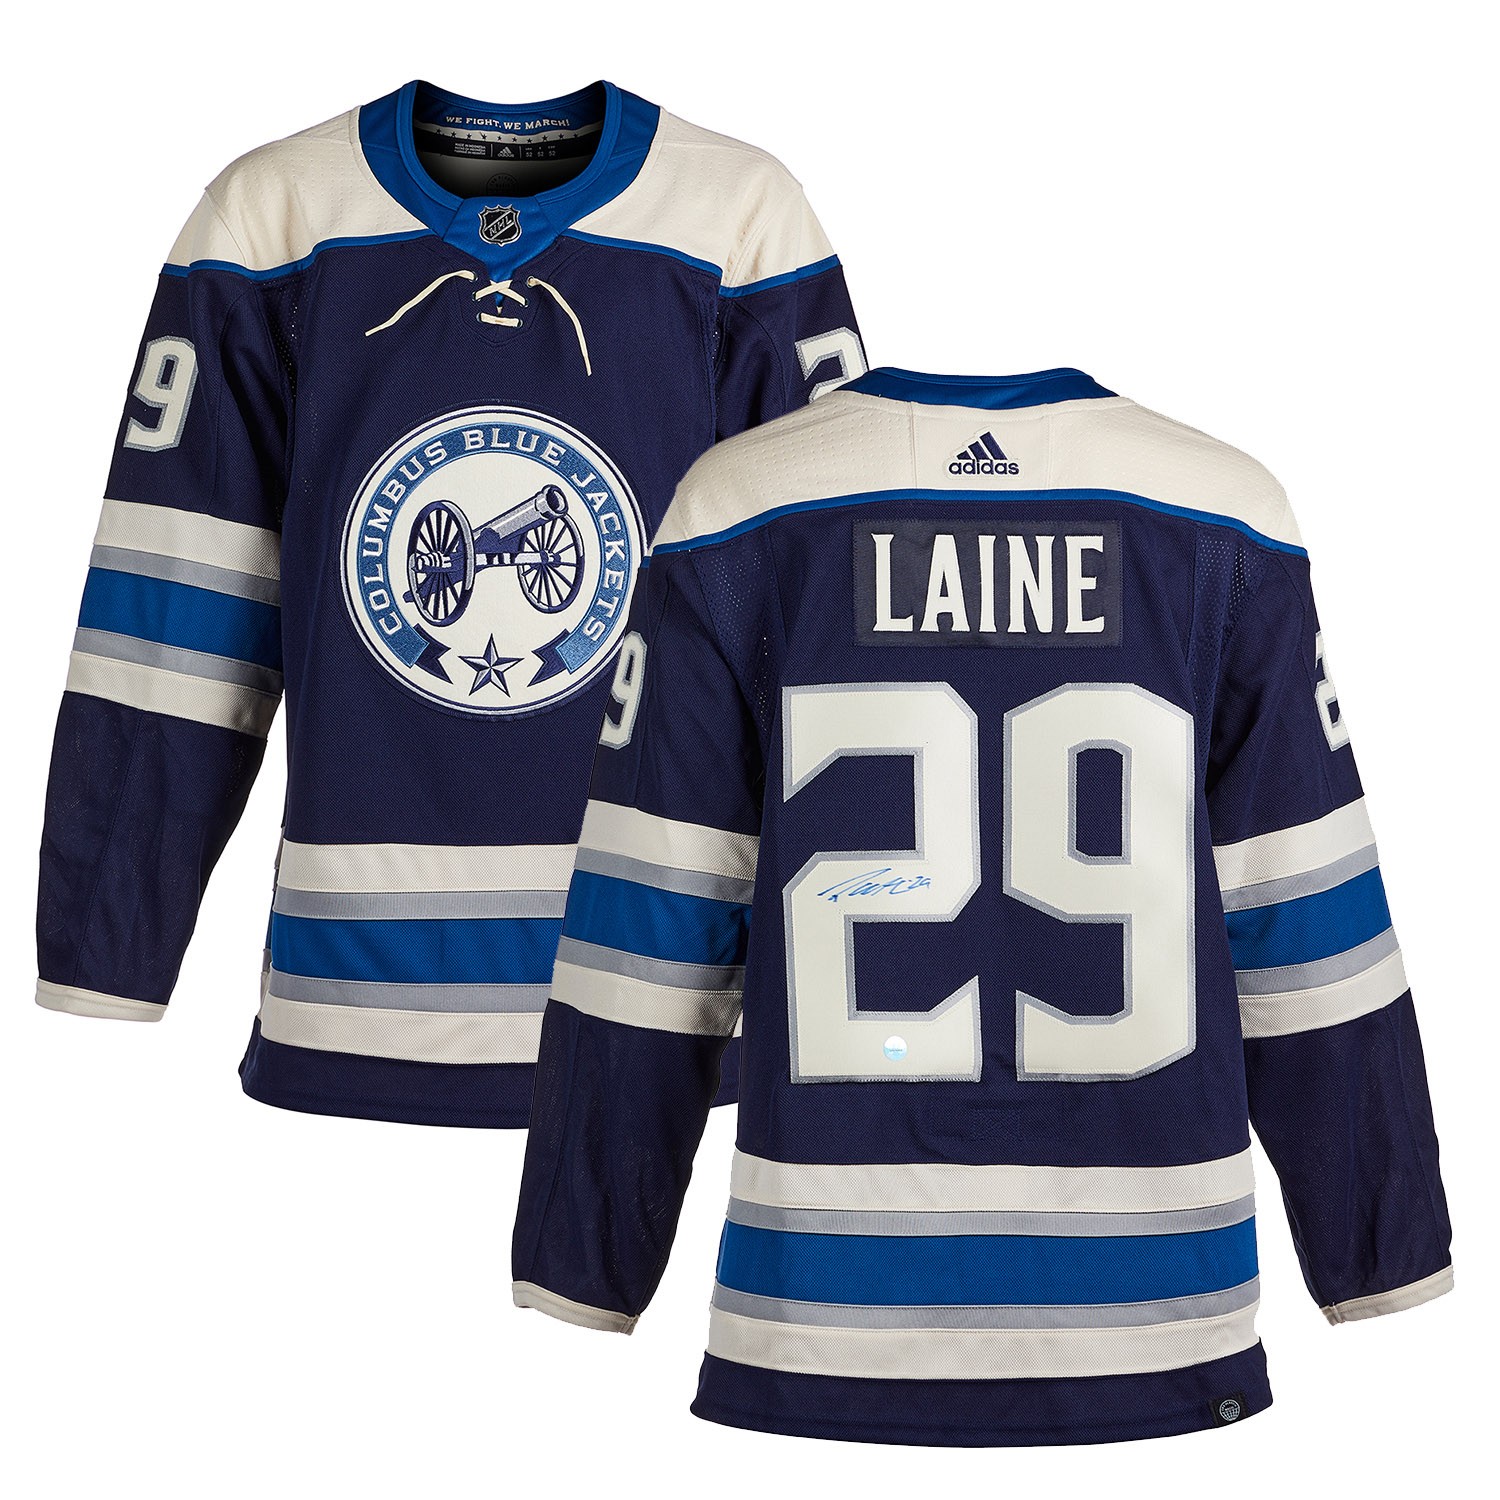 Patrik Laine NHL Original Autographed Items for sale